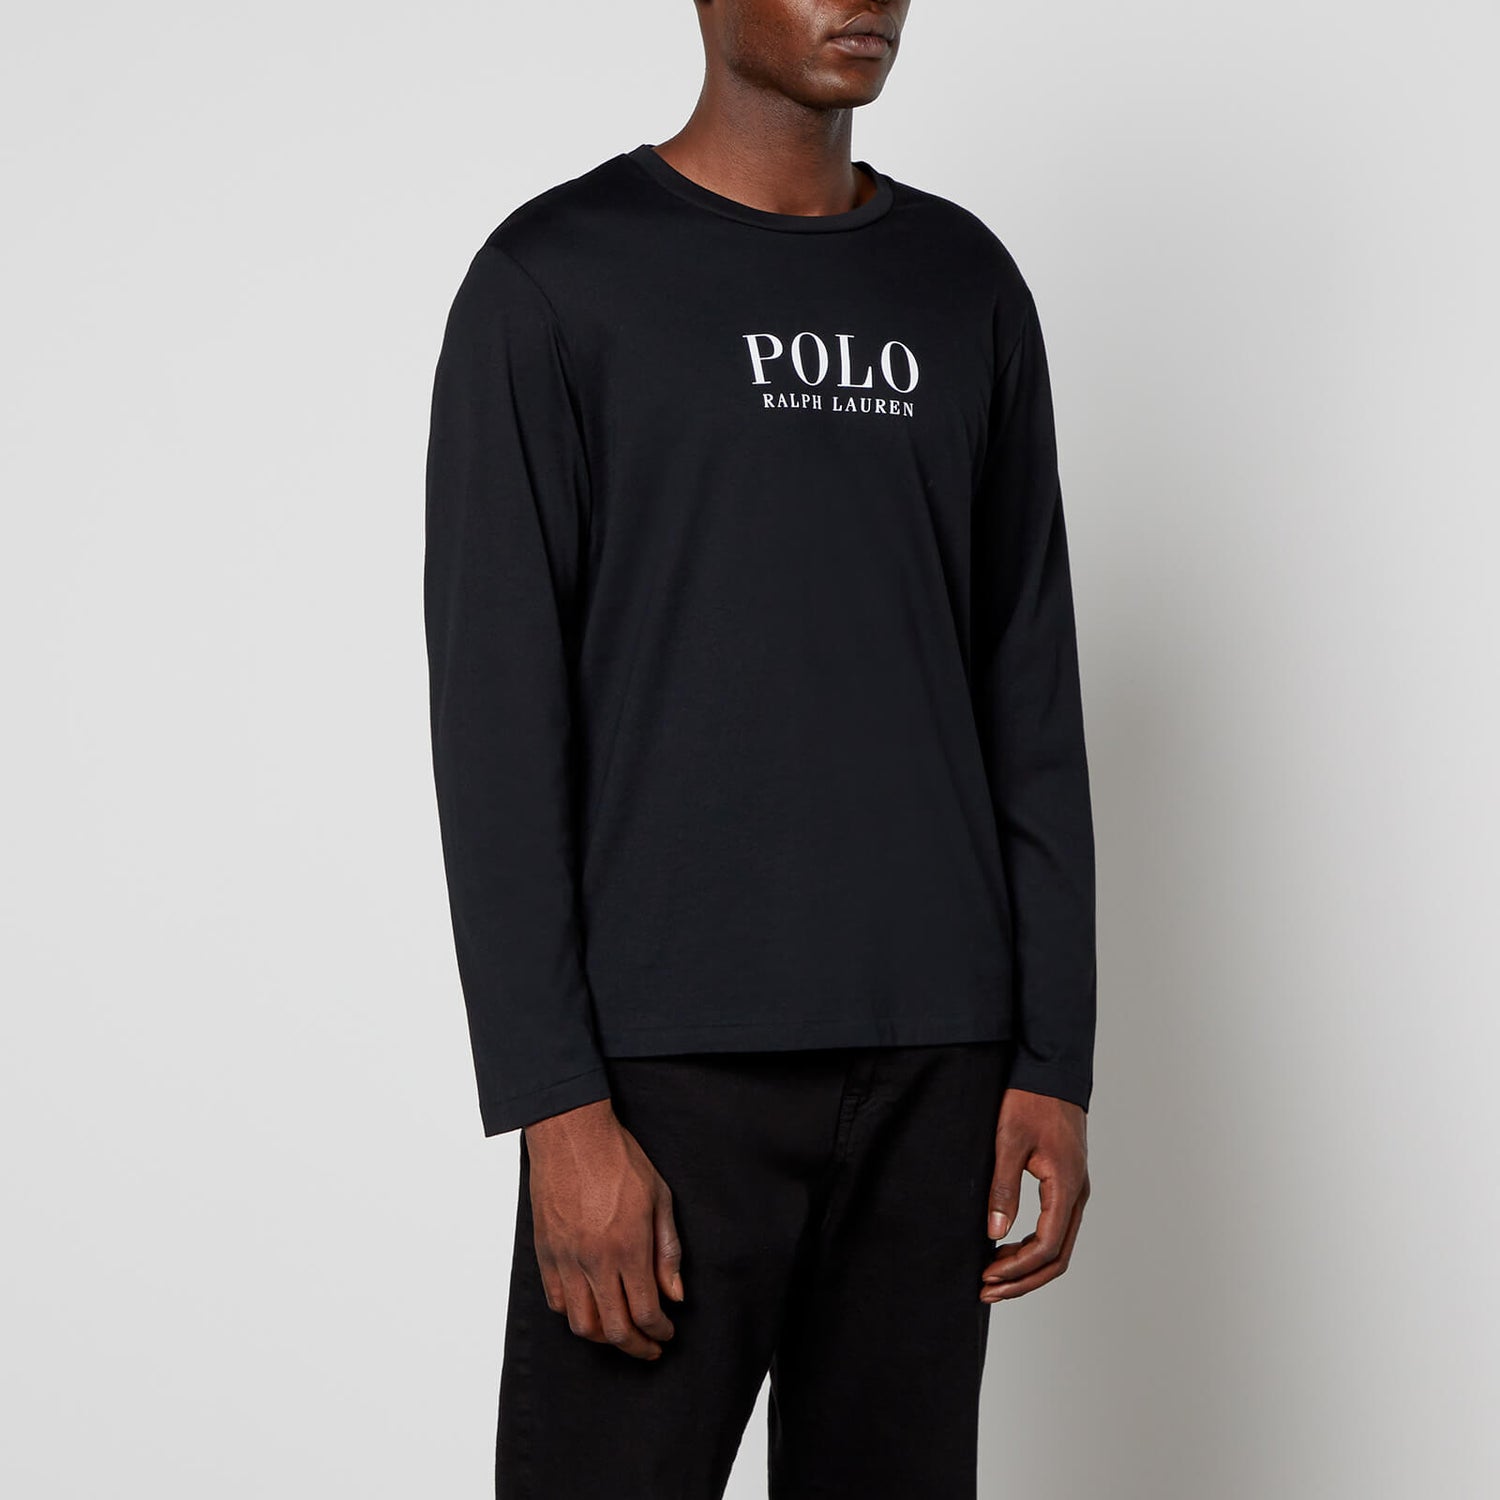 Polo Ralph Lauren Men's Boxed Logo Long Sleeve Top - Polo Black - S